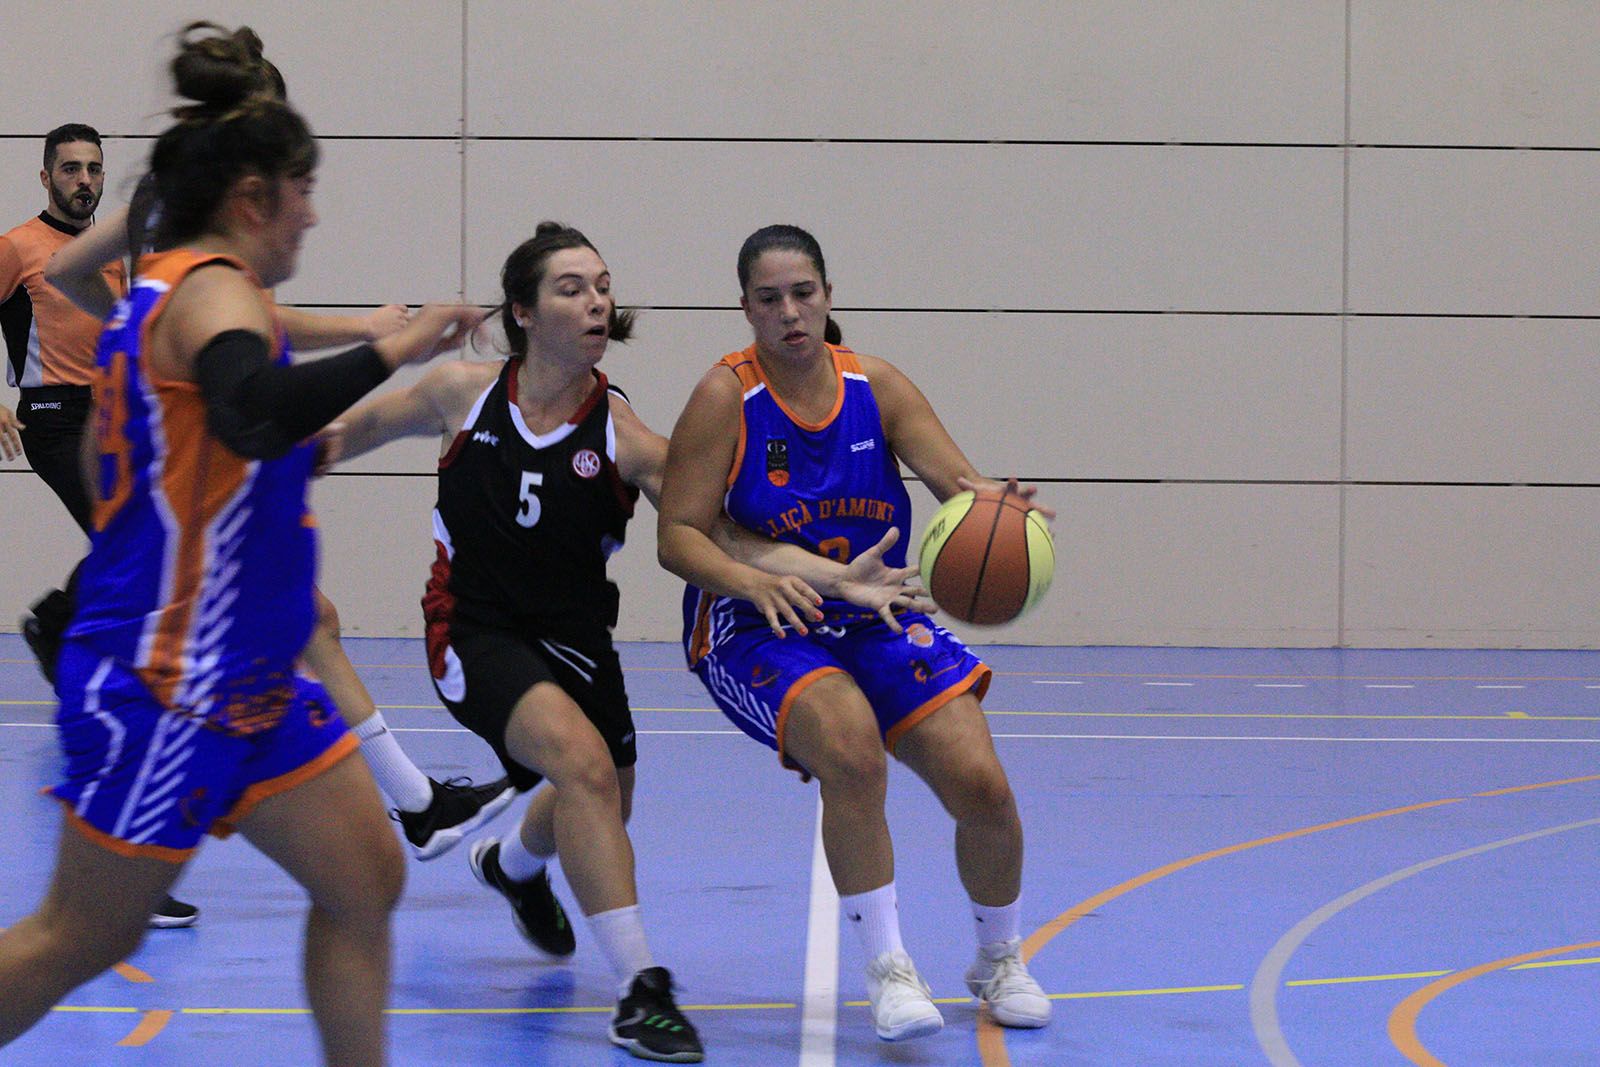 Lliga de bàsquet femení: UE Sant Cugat-Lliçà d'Amunt. Foto: Lali Álvarez